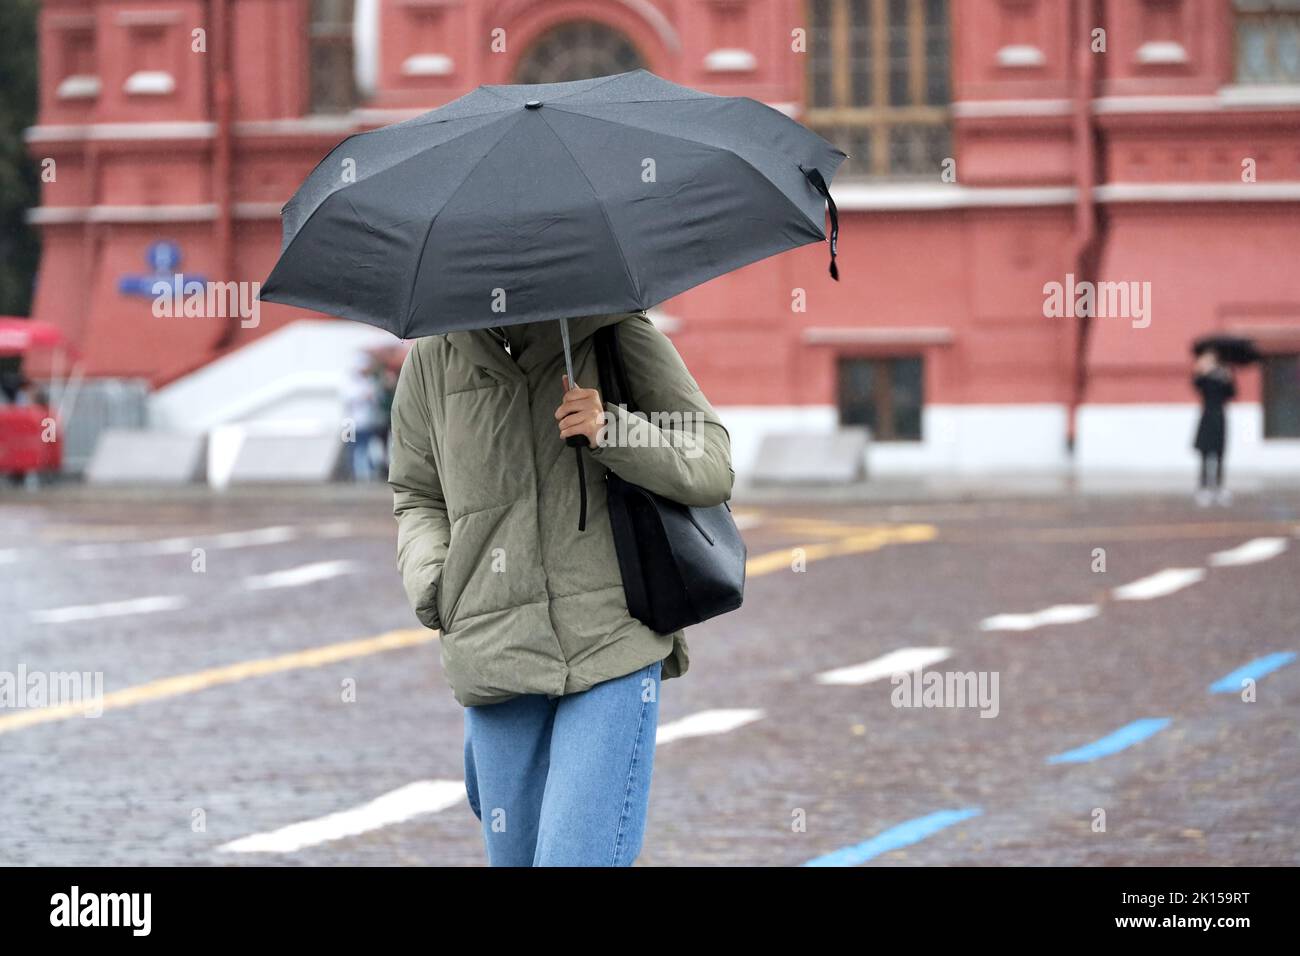 Lluvia en la ciudad, chica delgada en jeans y chaqueta con sombrilla negra en una calle. Clima lluvioso en otoño Foto de stock